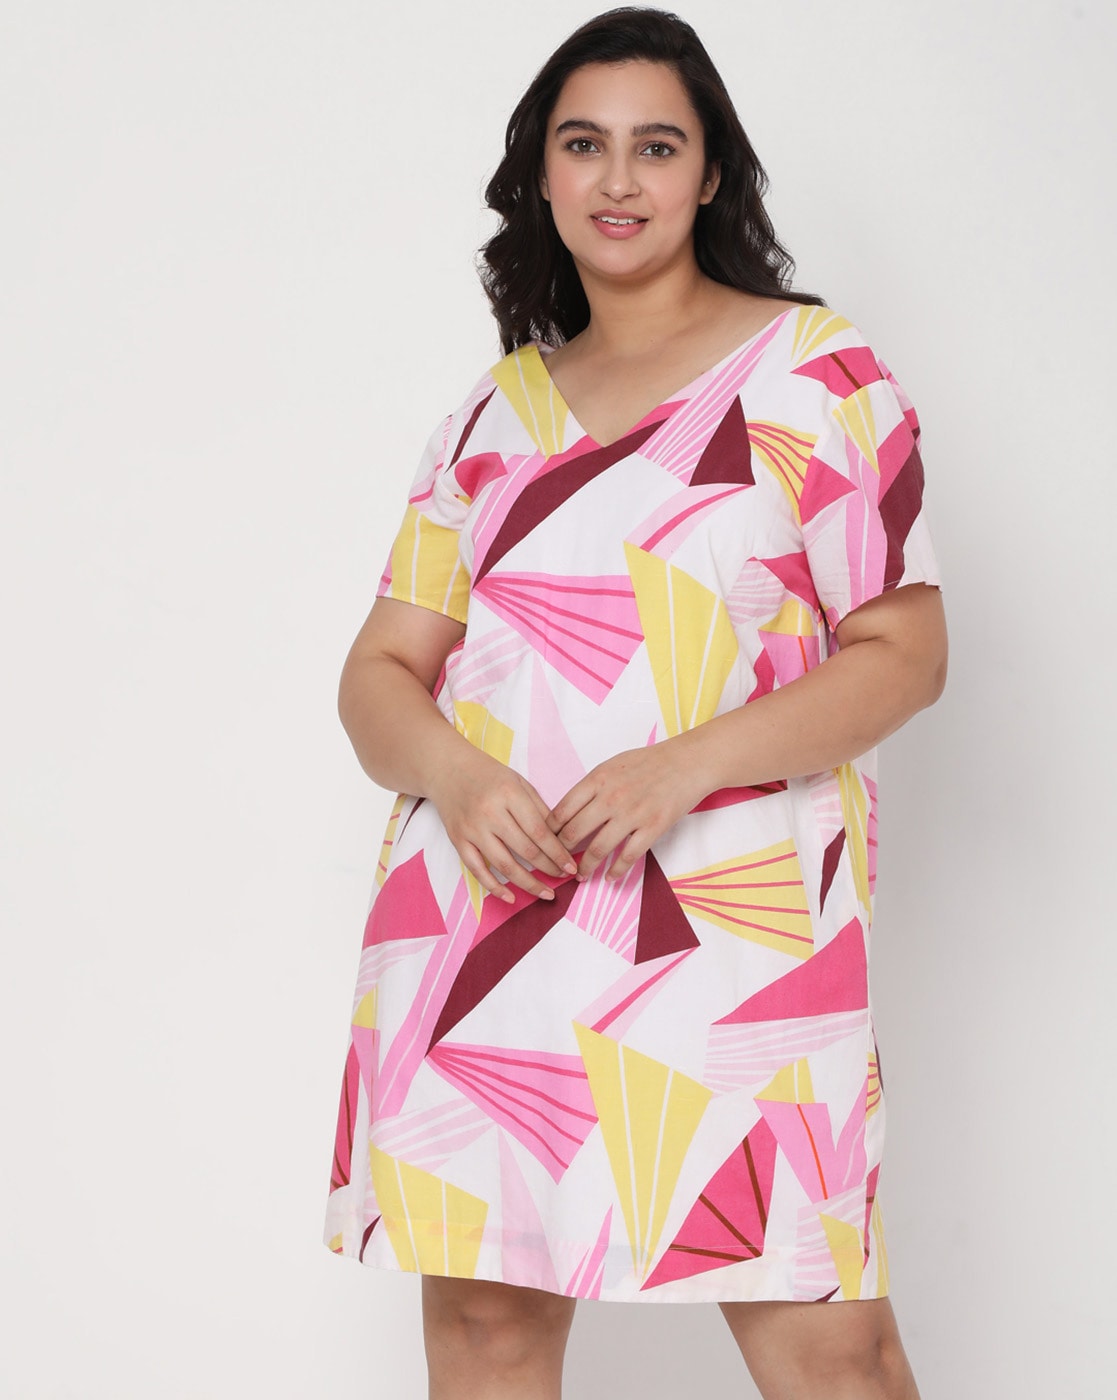 granske excitation USA Buy Multicoloured Dresses for Women by Vero Moda Online | Ajio.com